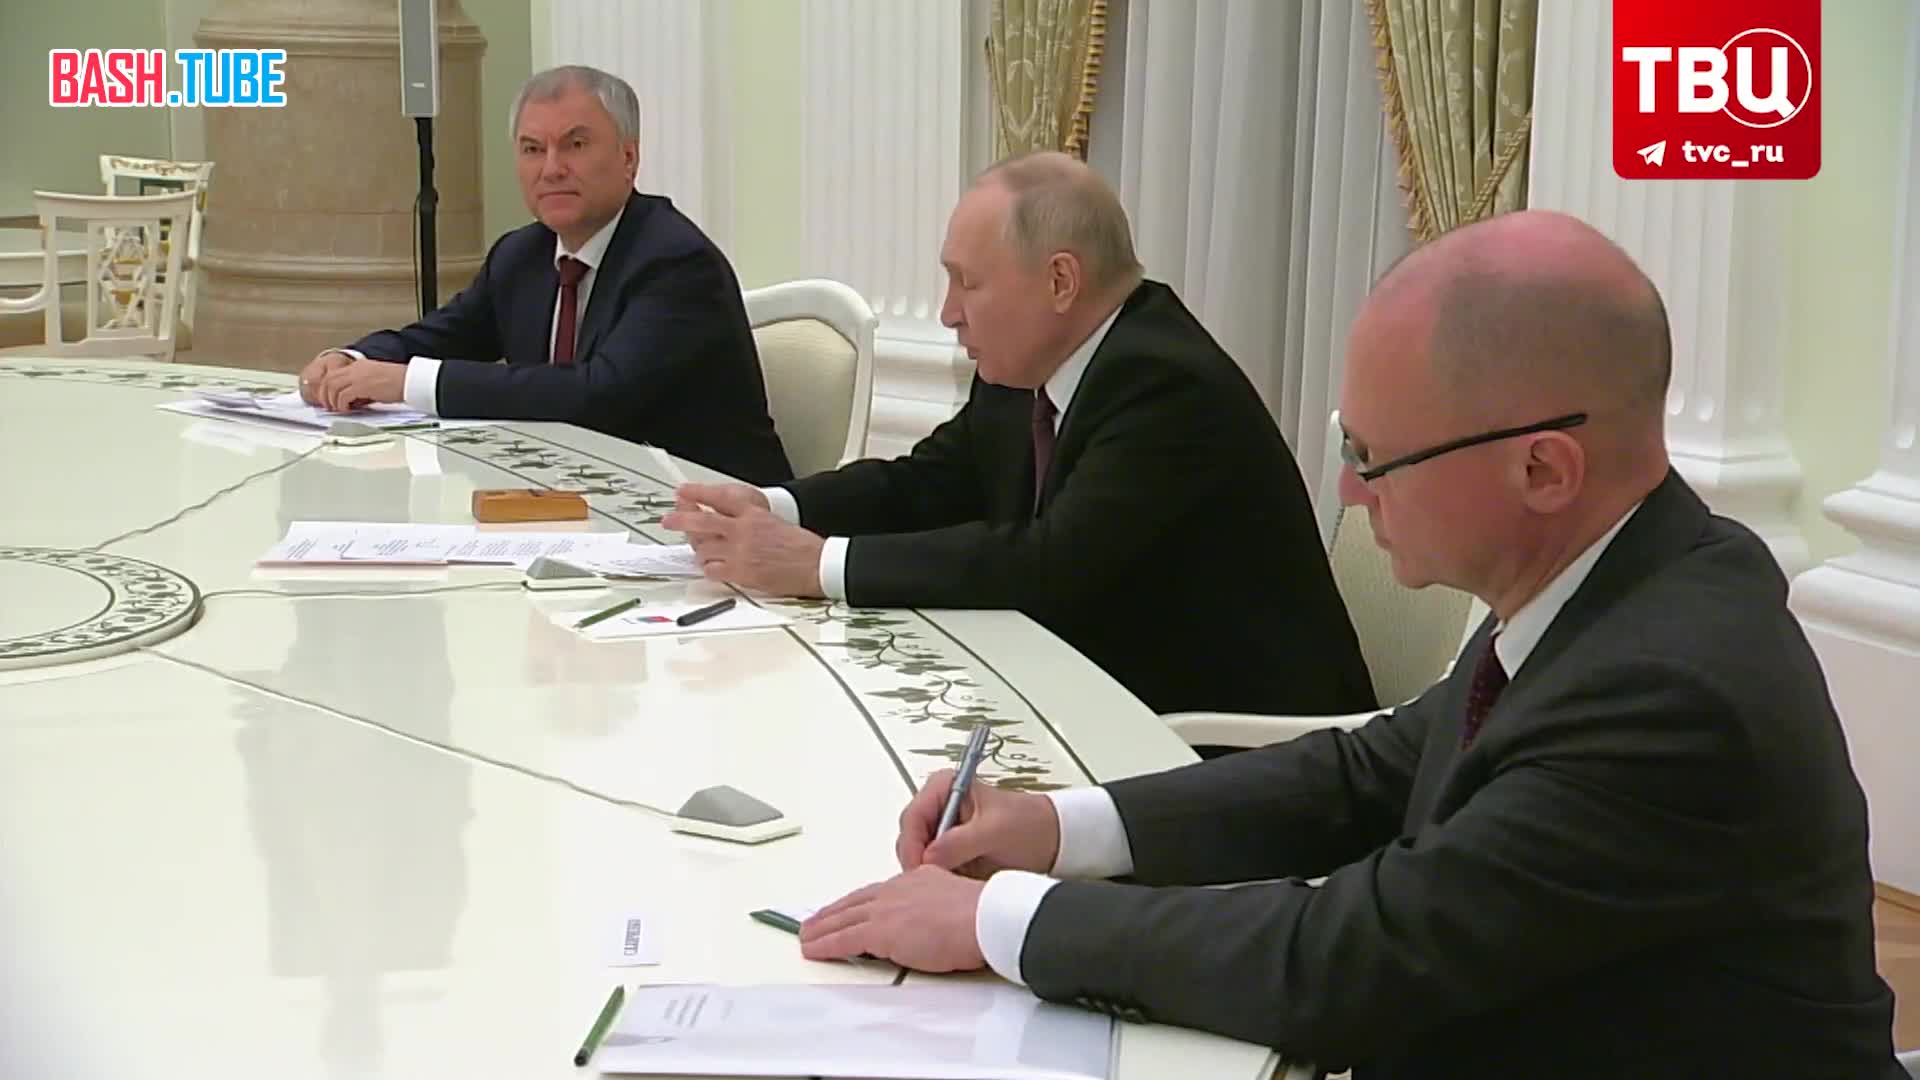  «Любое вмешательство в выборы в России извне будет жестко пресекаться», - заявил Владимир Путин